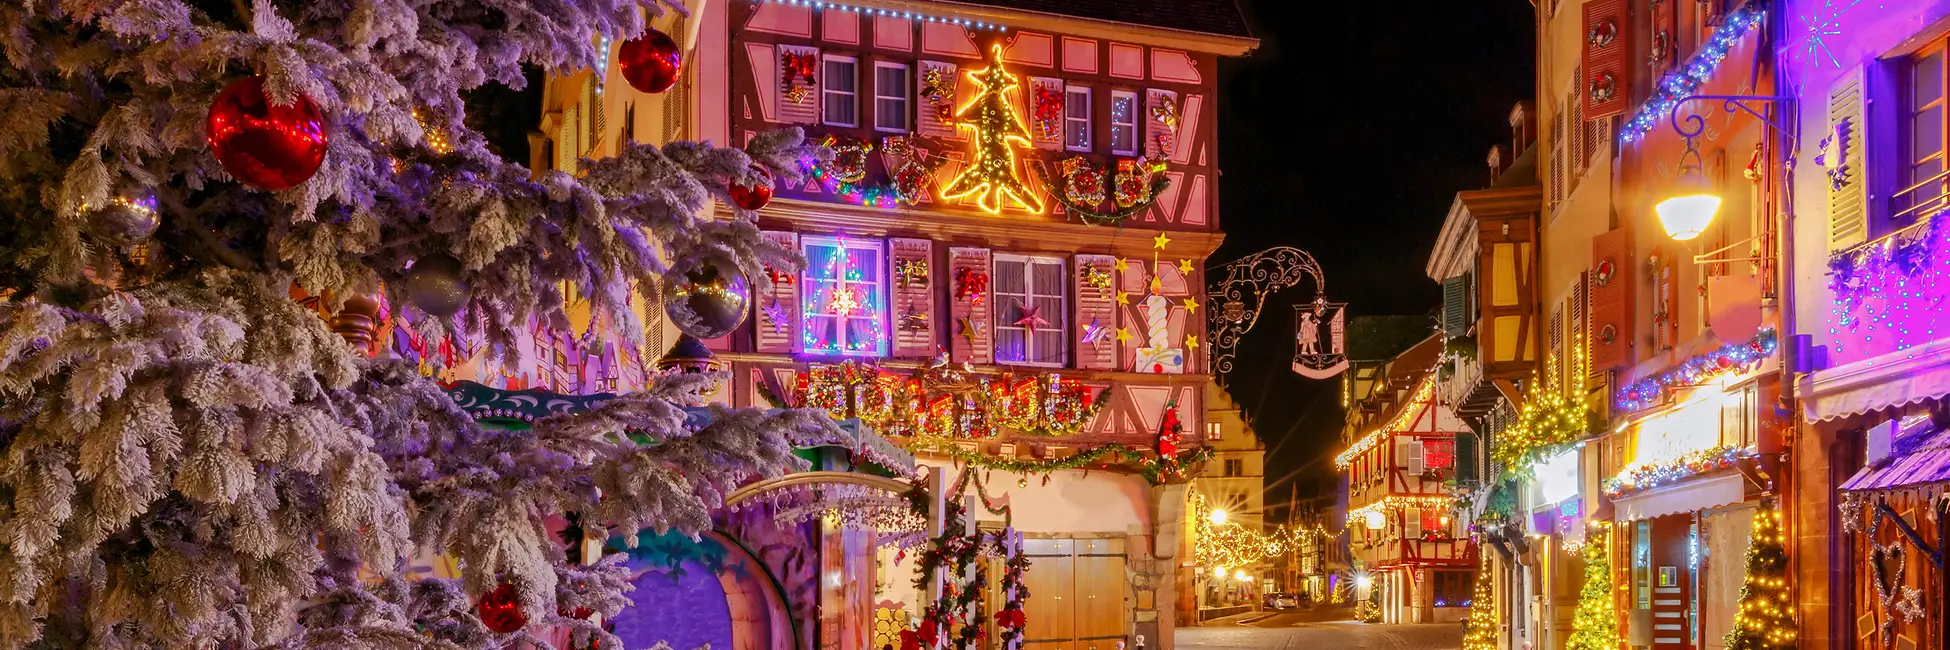 La ville de Colmar décorée pour Noël 